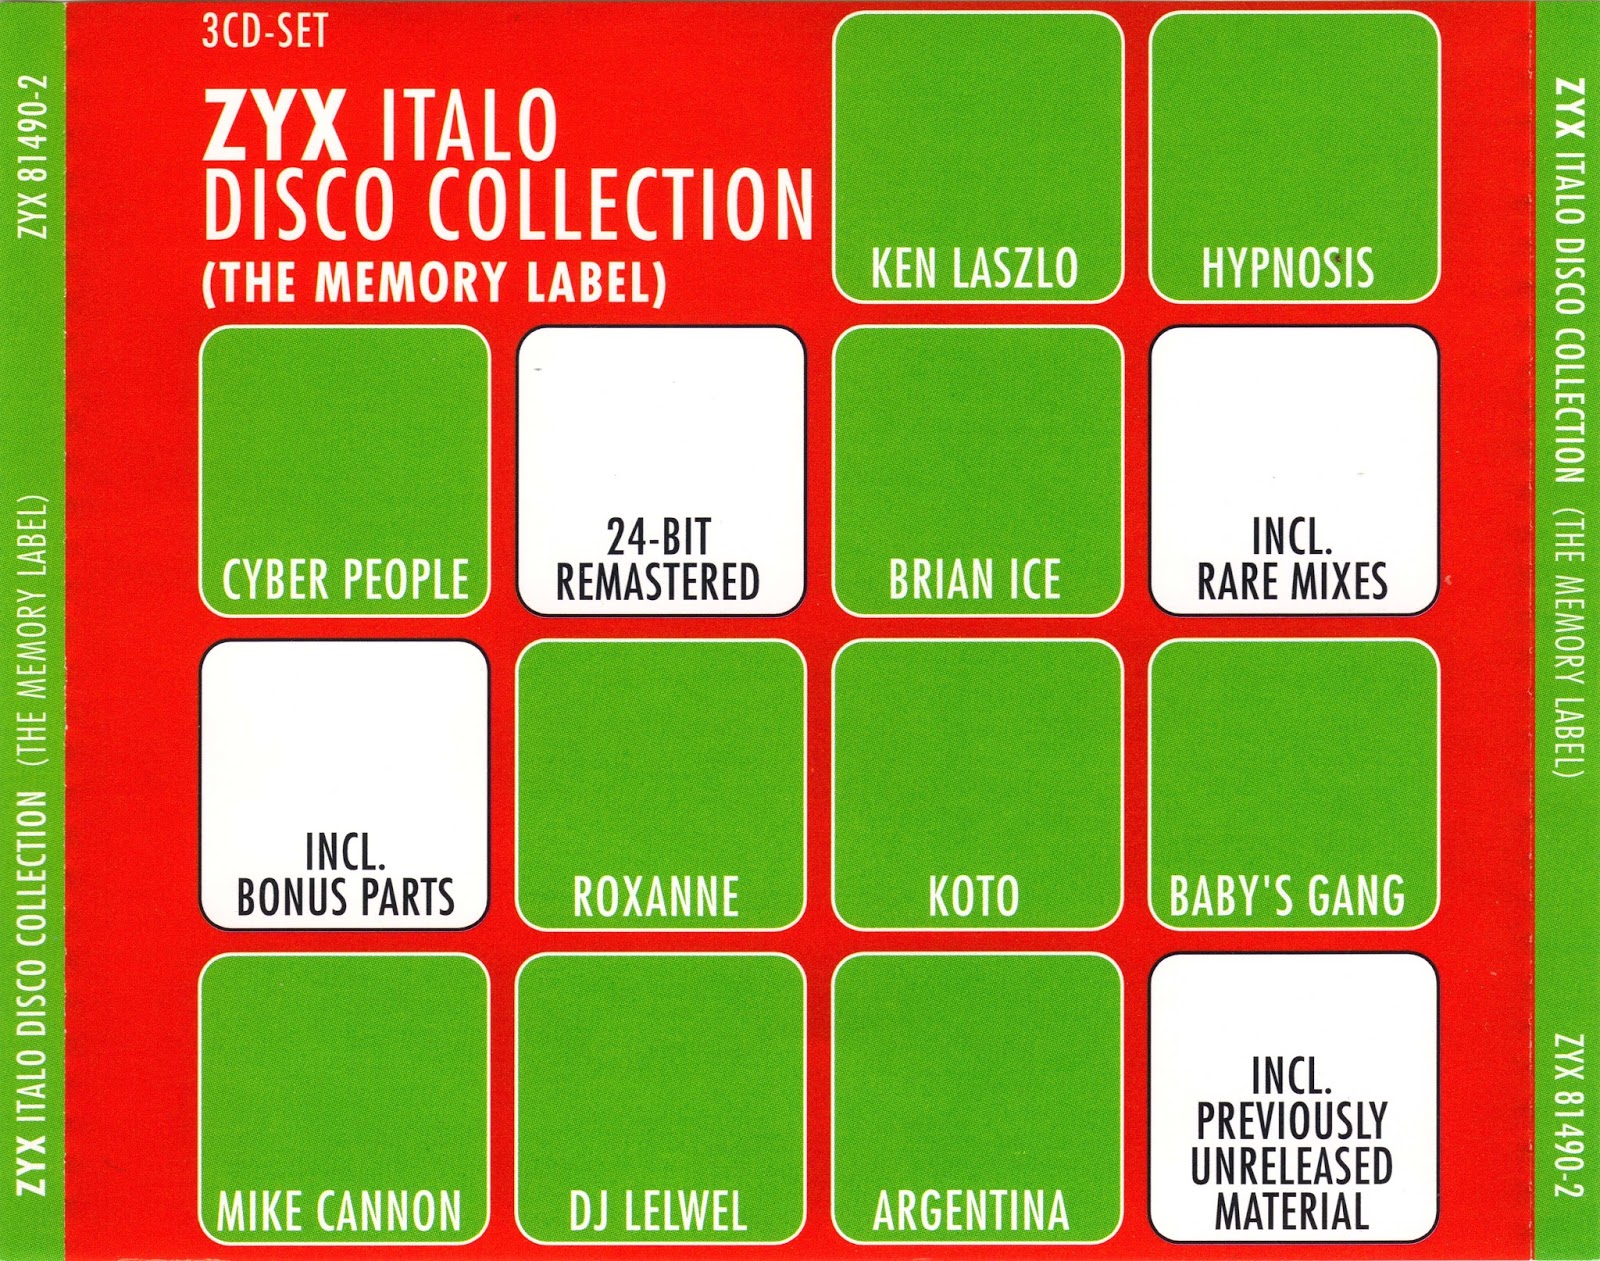 Áudio Music Classic: VA - I Love ZYX Italo Disco Collection 1-20 (60CD ...